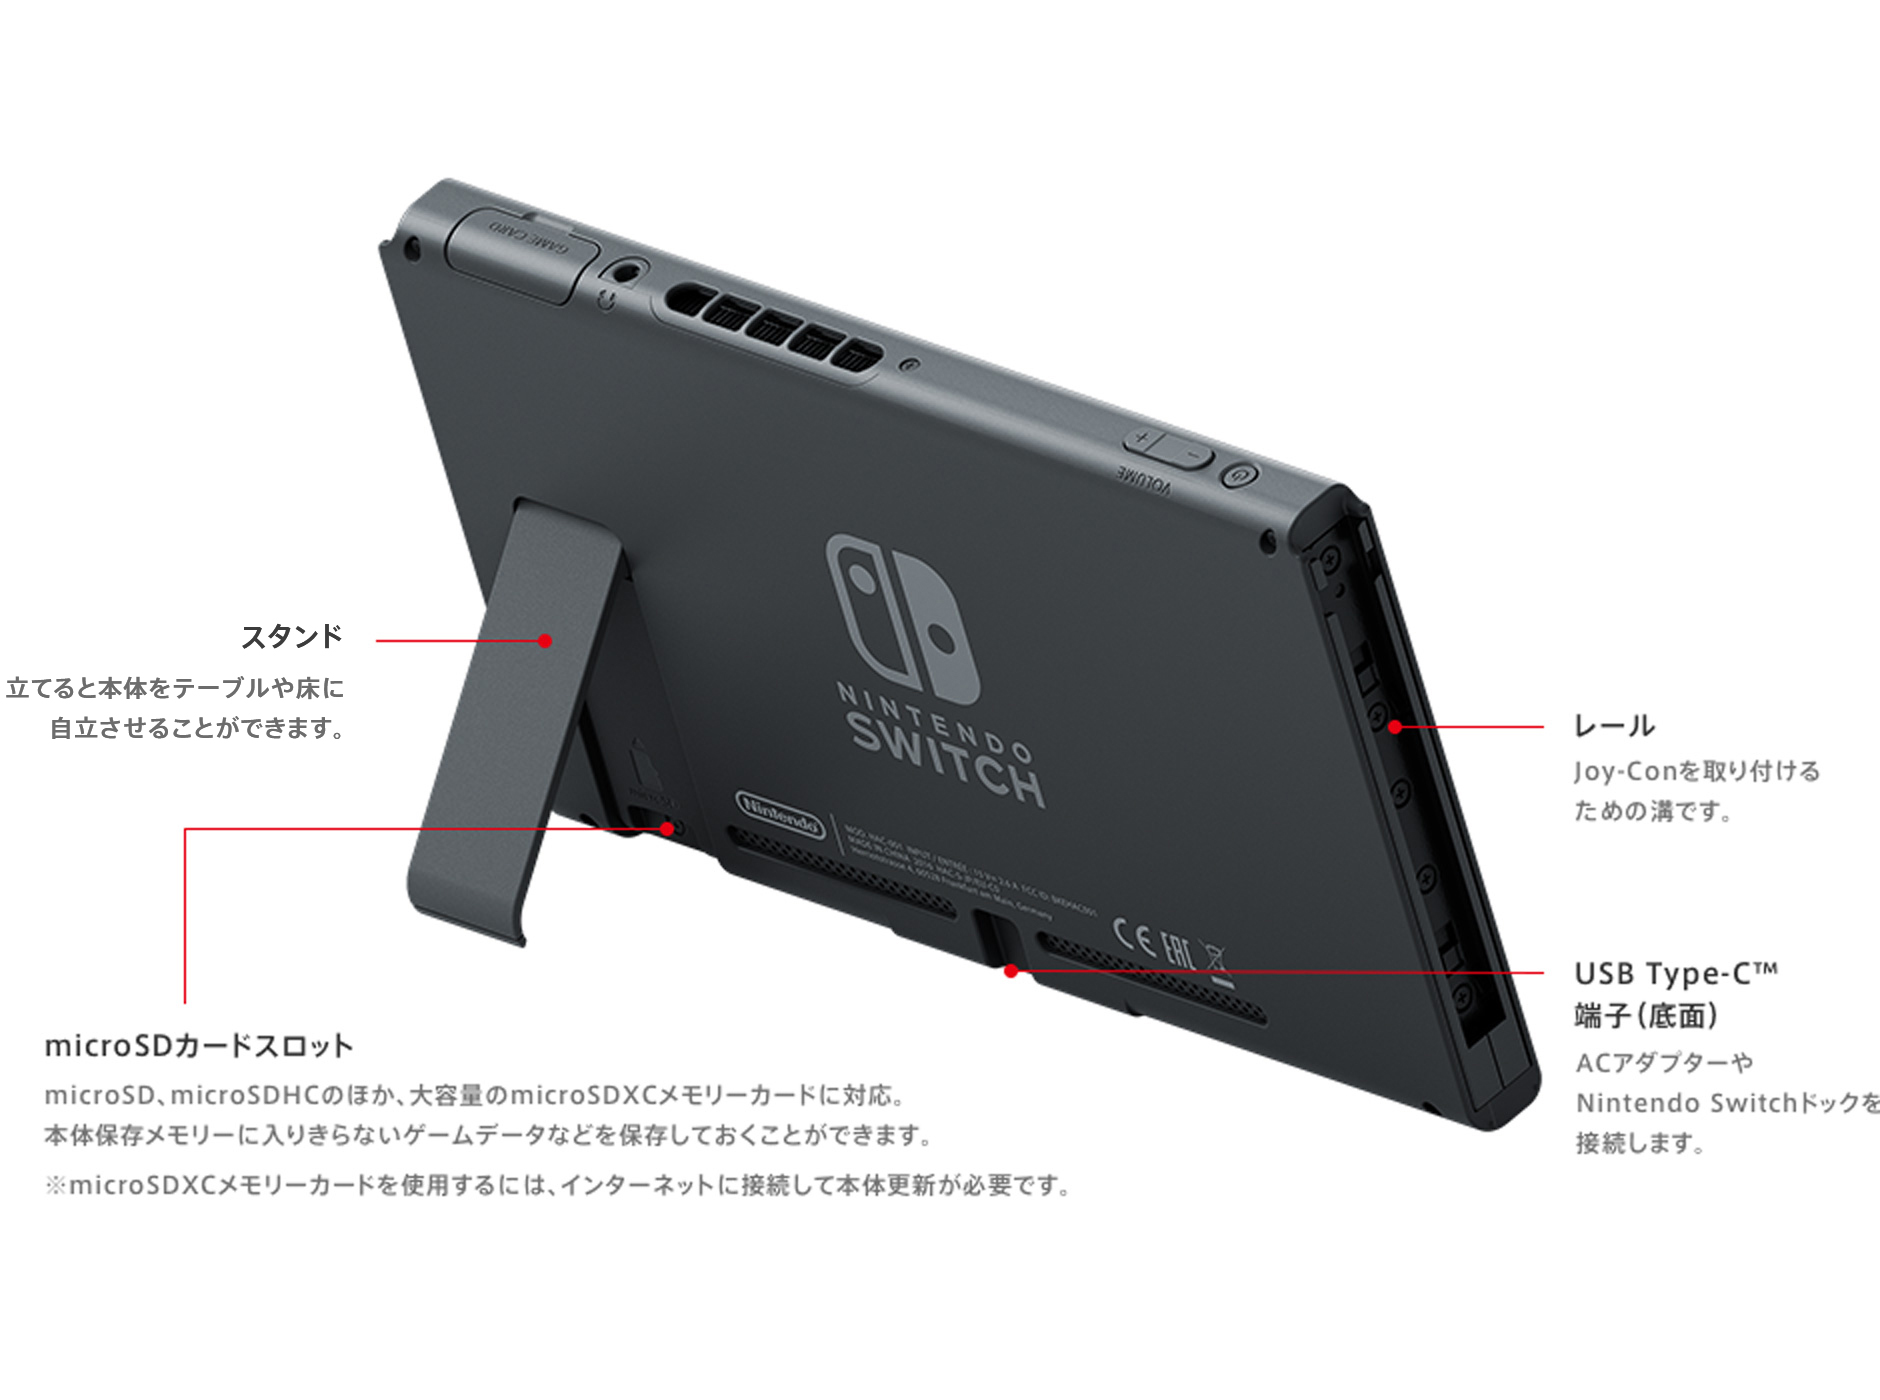 【ネオンレッ】 Nintendo Switch - 新品 任天堂 ニンテンドー スイッチ 本体 Switch 店舗印なしの通販 by さかわさ